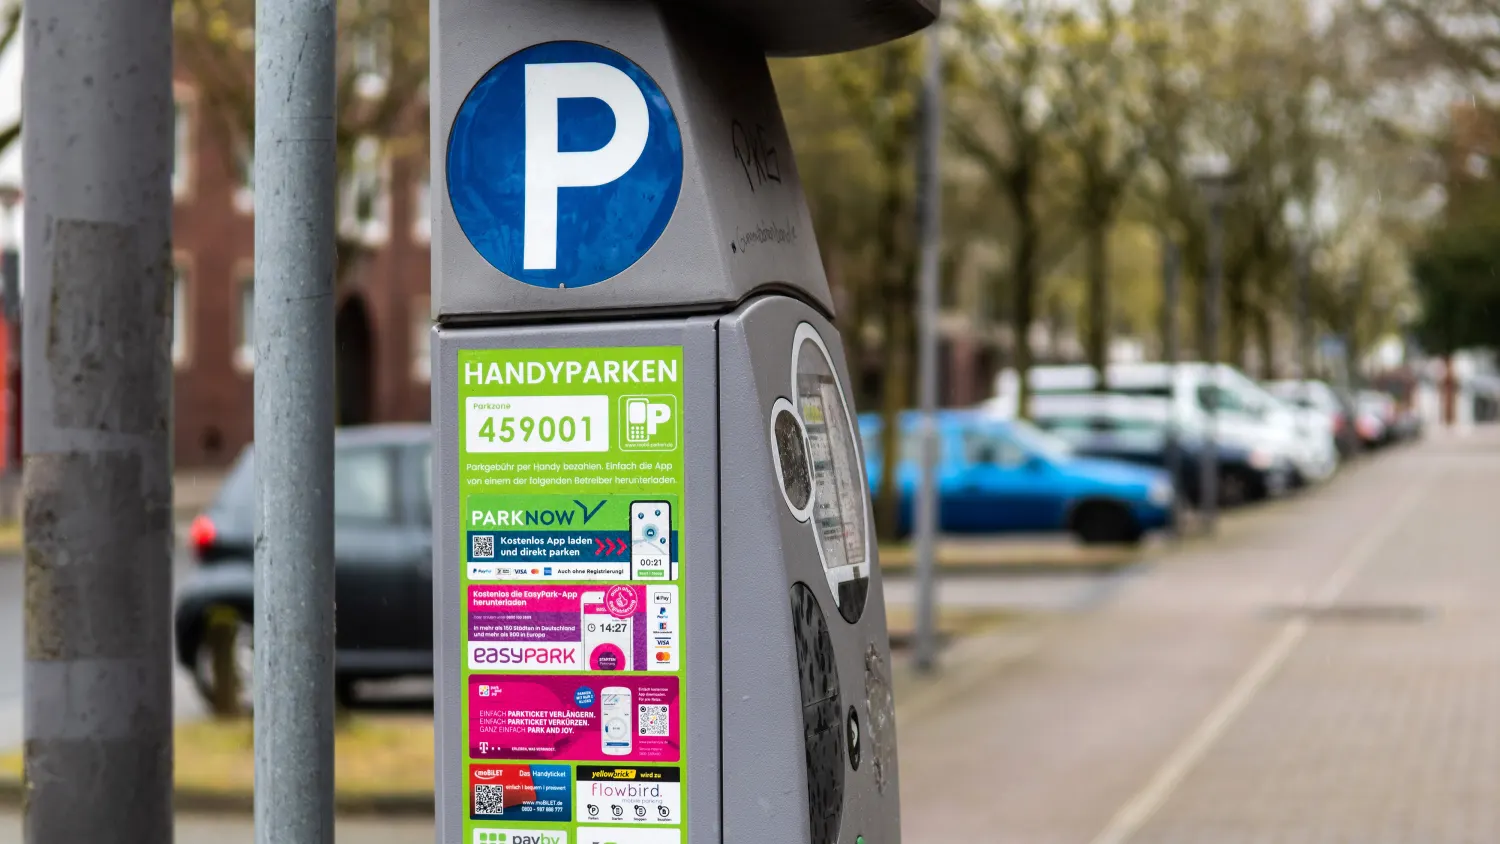 Handyparken in Schwabach – per SMS oder App Parkgebühren bezahlen –  Stadtportal Schwabach